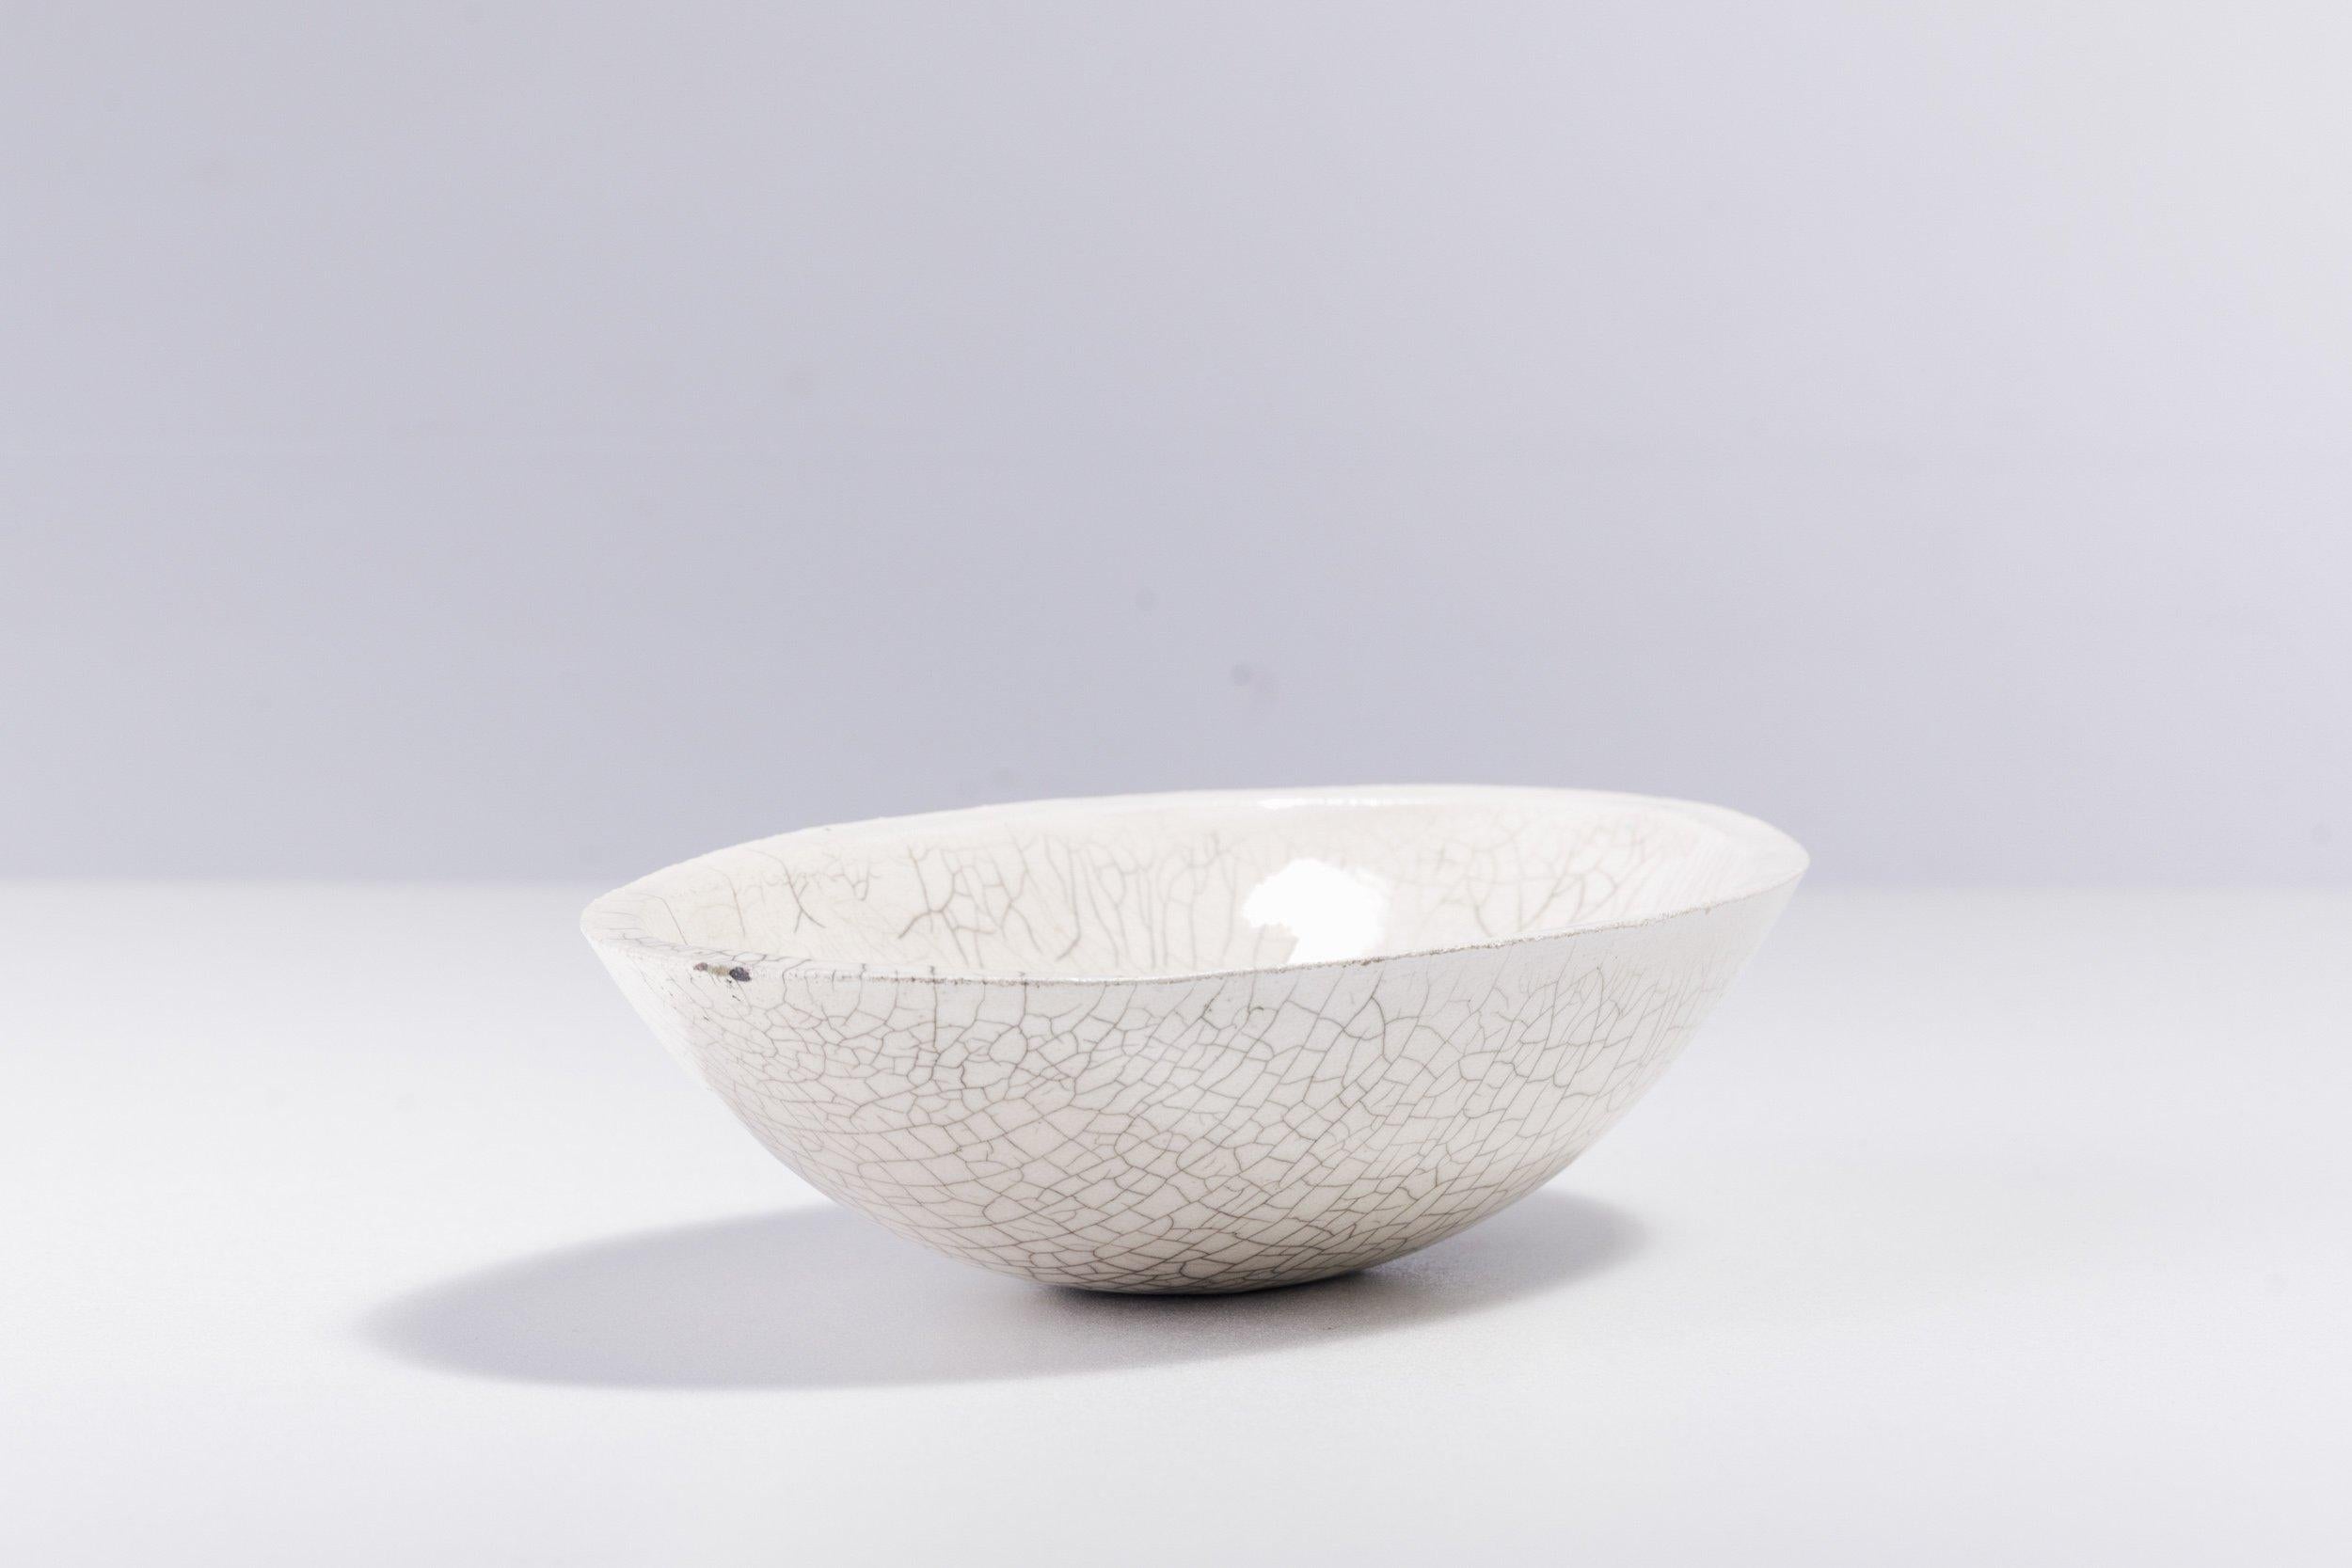 Donburi-Schale

Diese Keramikschüssel zeichnet sich durch eine erstaunliche Textur aus, die durch ein schattiertes Spinnennetzmotiv hervorgehoben wird, das ein einzigartiges Ergebnis der japanischen Raku-Brandtechnik ist. Sie ist eine wunderschöne